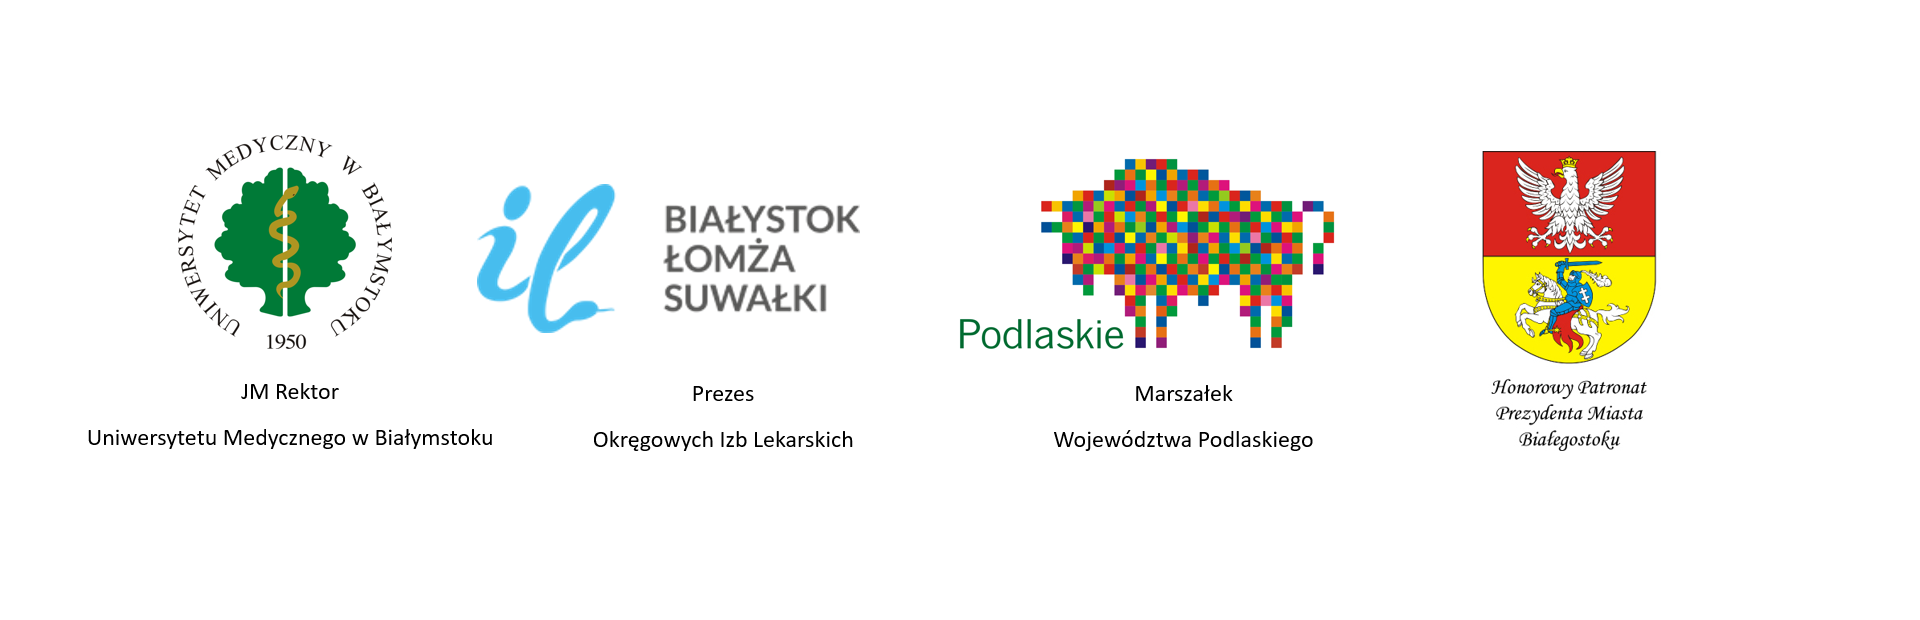 logotypy: UMB, Izba Lekarska, Województwo Podlaskie, Miasto Białystok